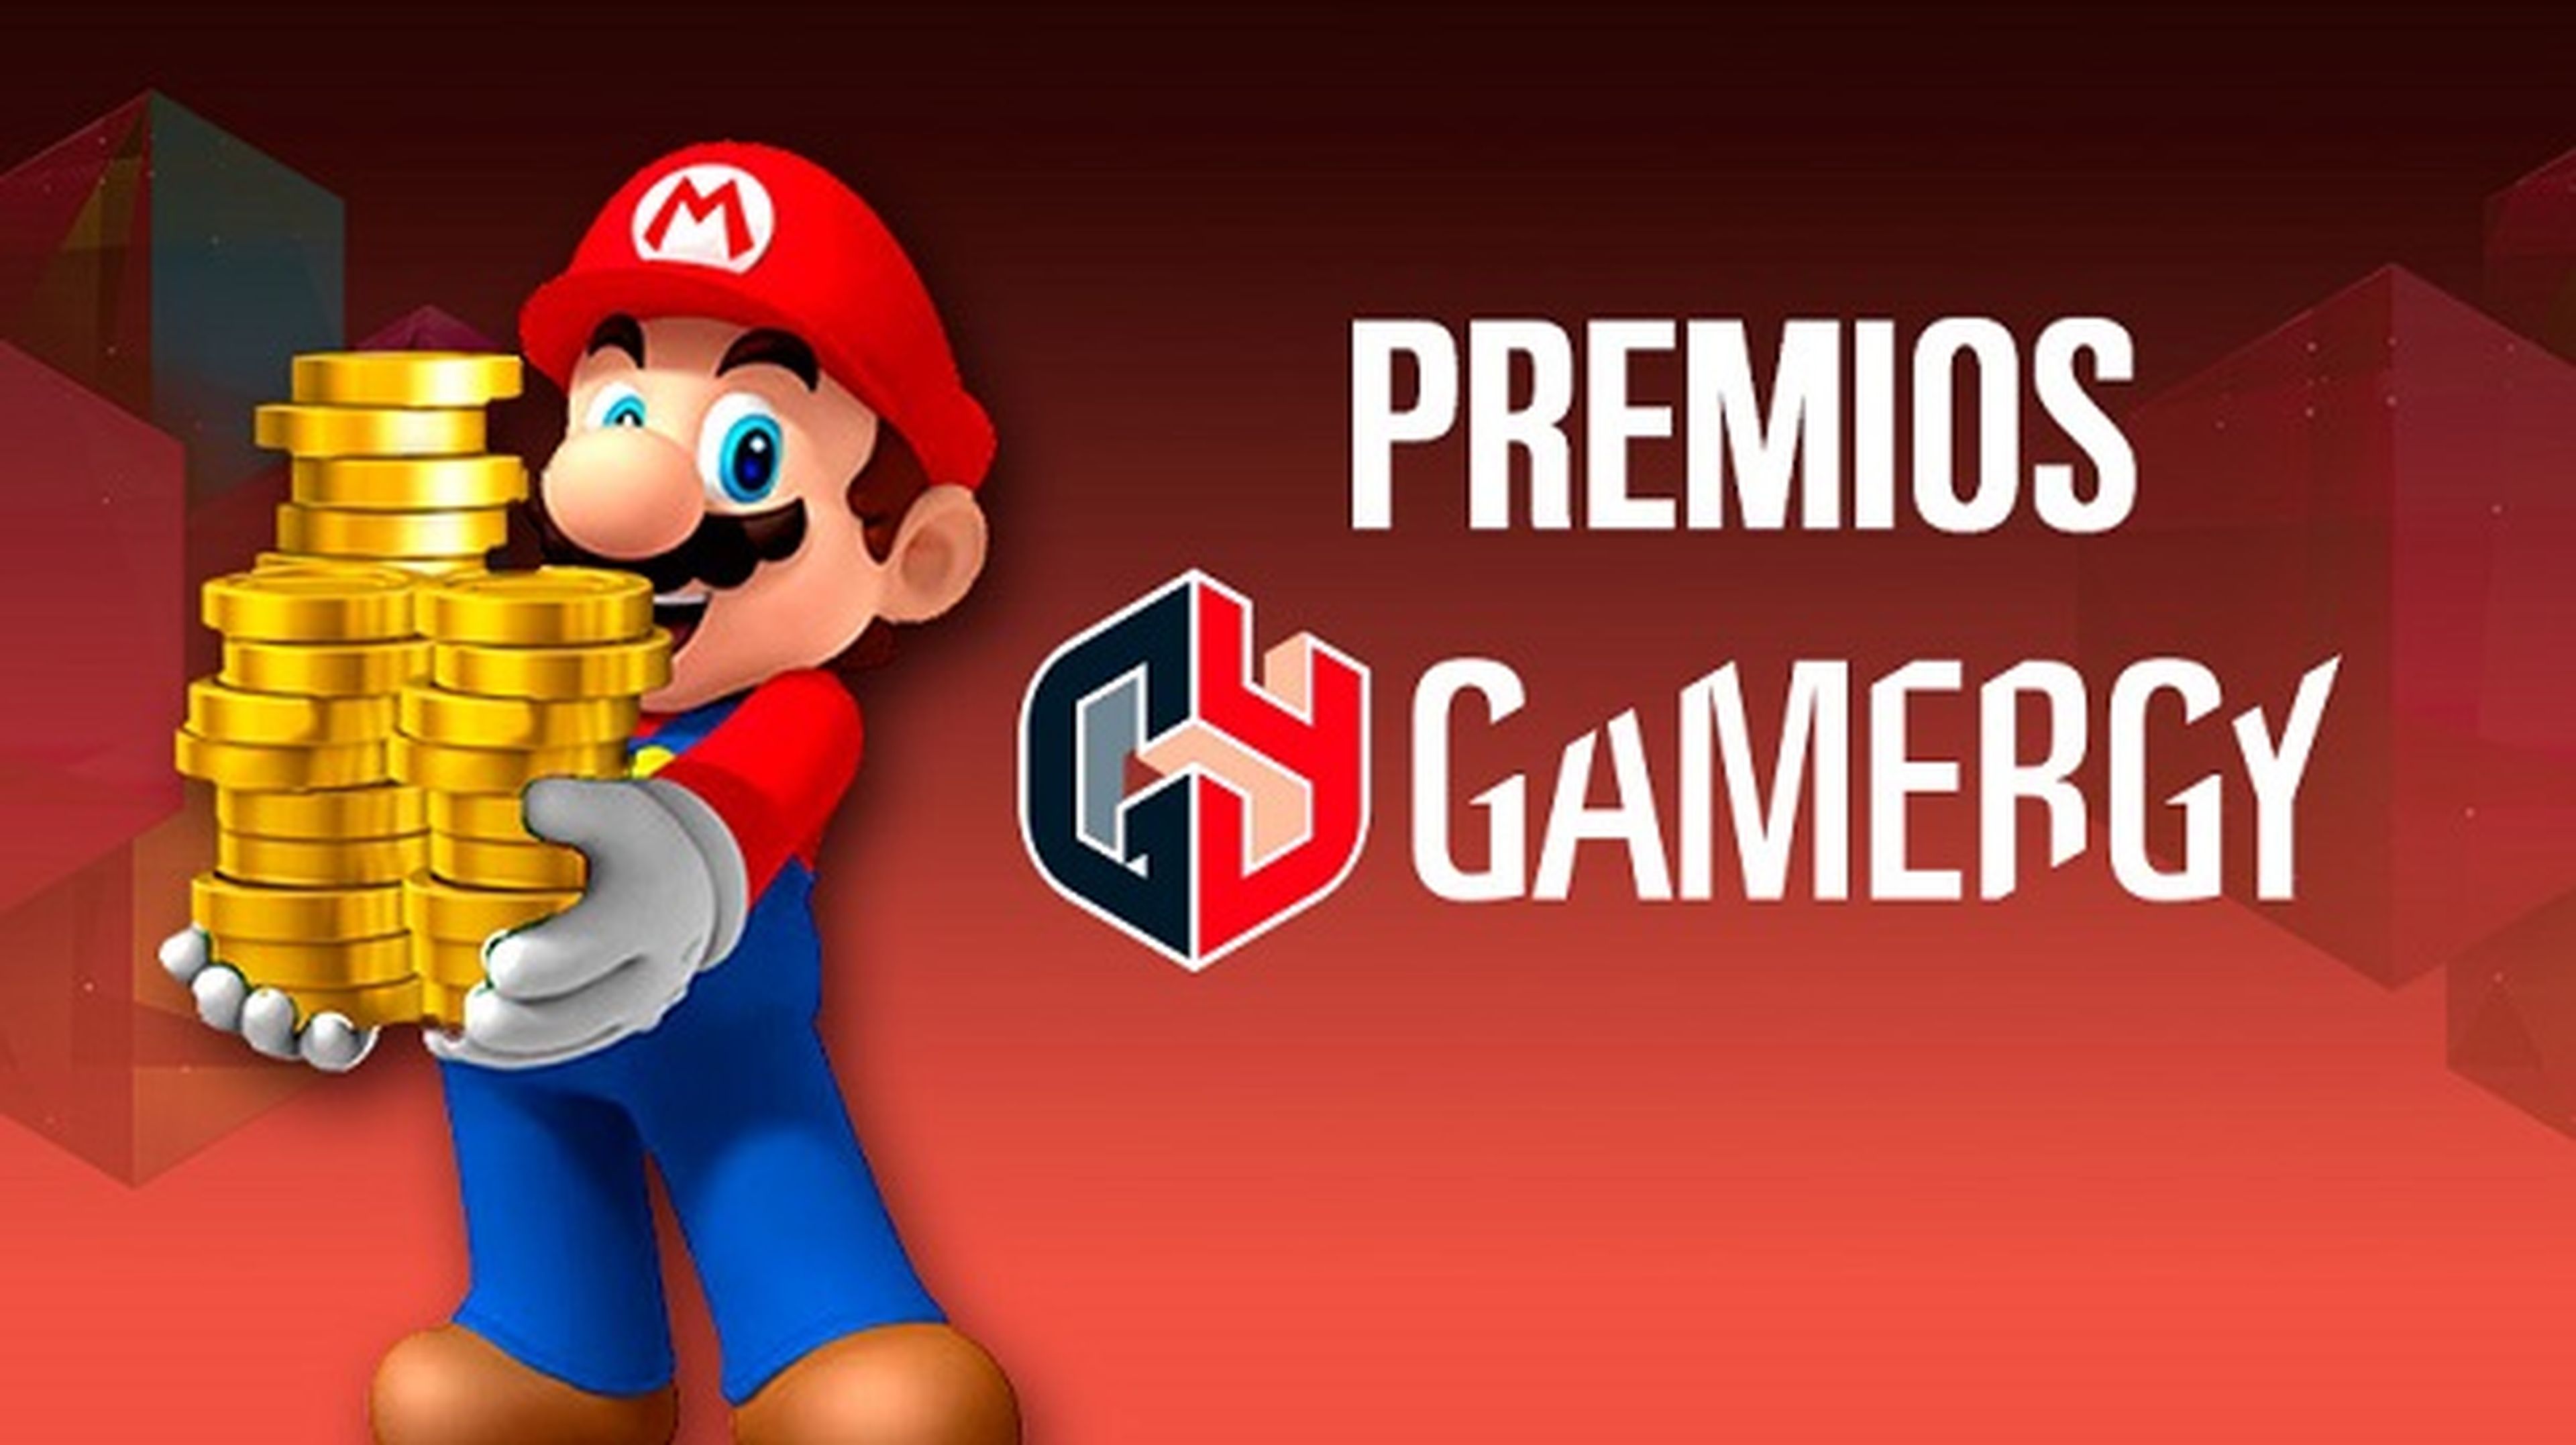 Premios de Super Smash Bros en Gamergy